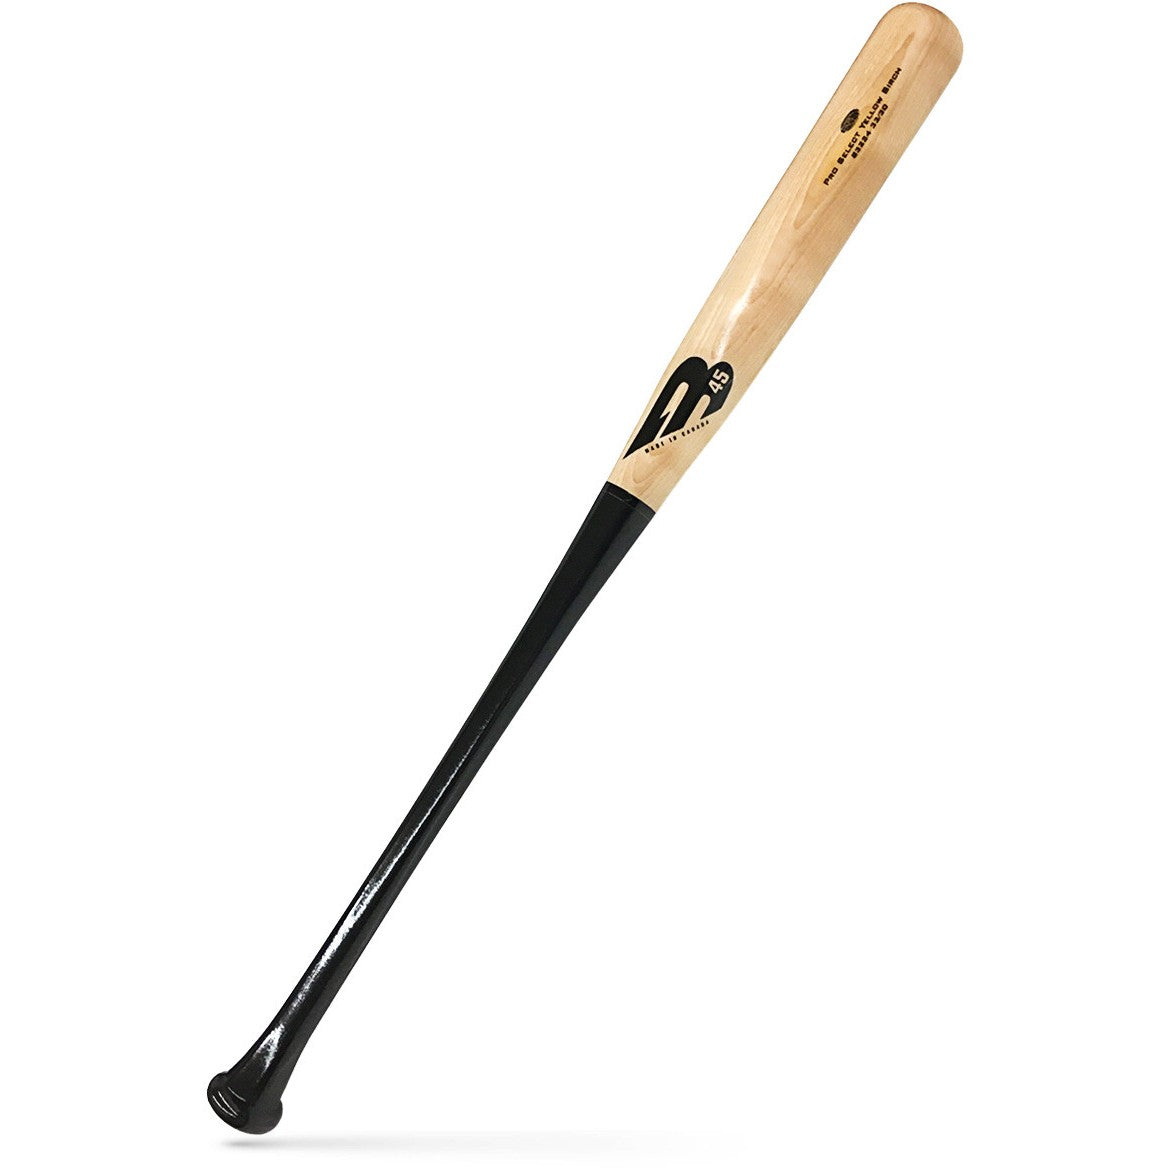 B45 Pro Select Stock B243 Birch Baseball Bat